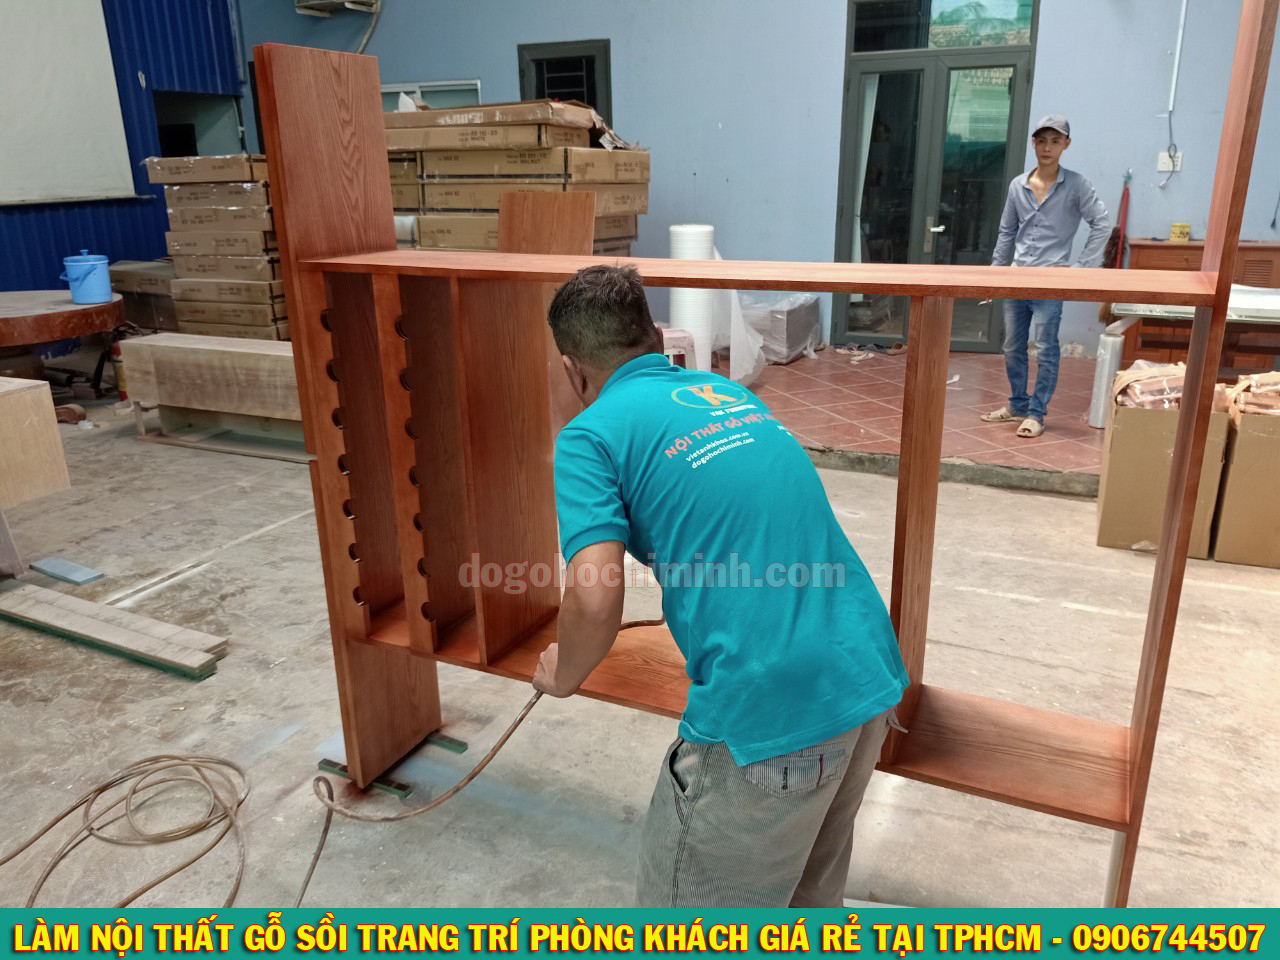 Thi công nội thất gỗ sồi giá rẻ tại nhà Chị Linh - Thủ Đức TPHCM 2020